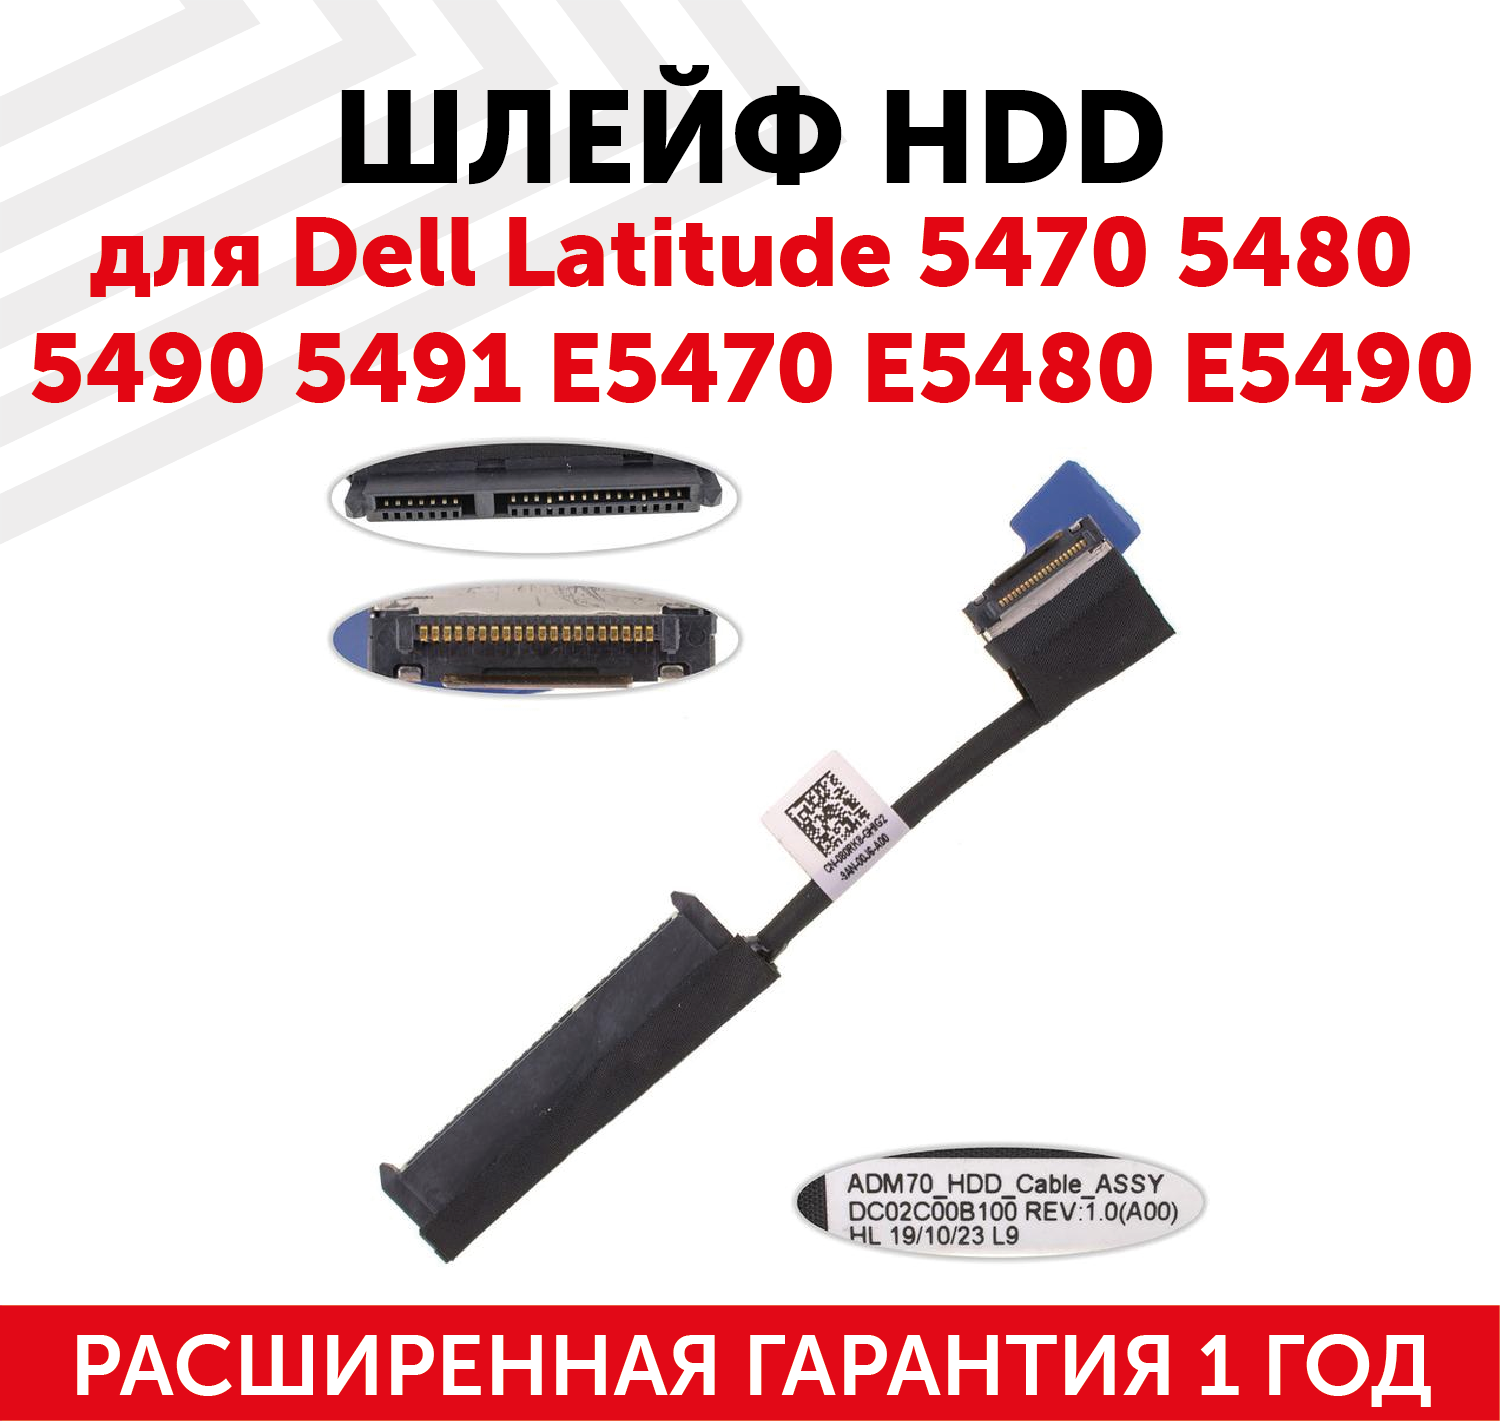 Шлейф жесткого диска для ноутбука Dell Latitude 5470, 5480, 5490, 5491, E5470, E5480, E5490